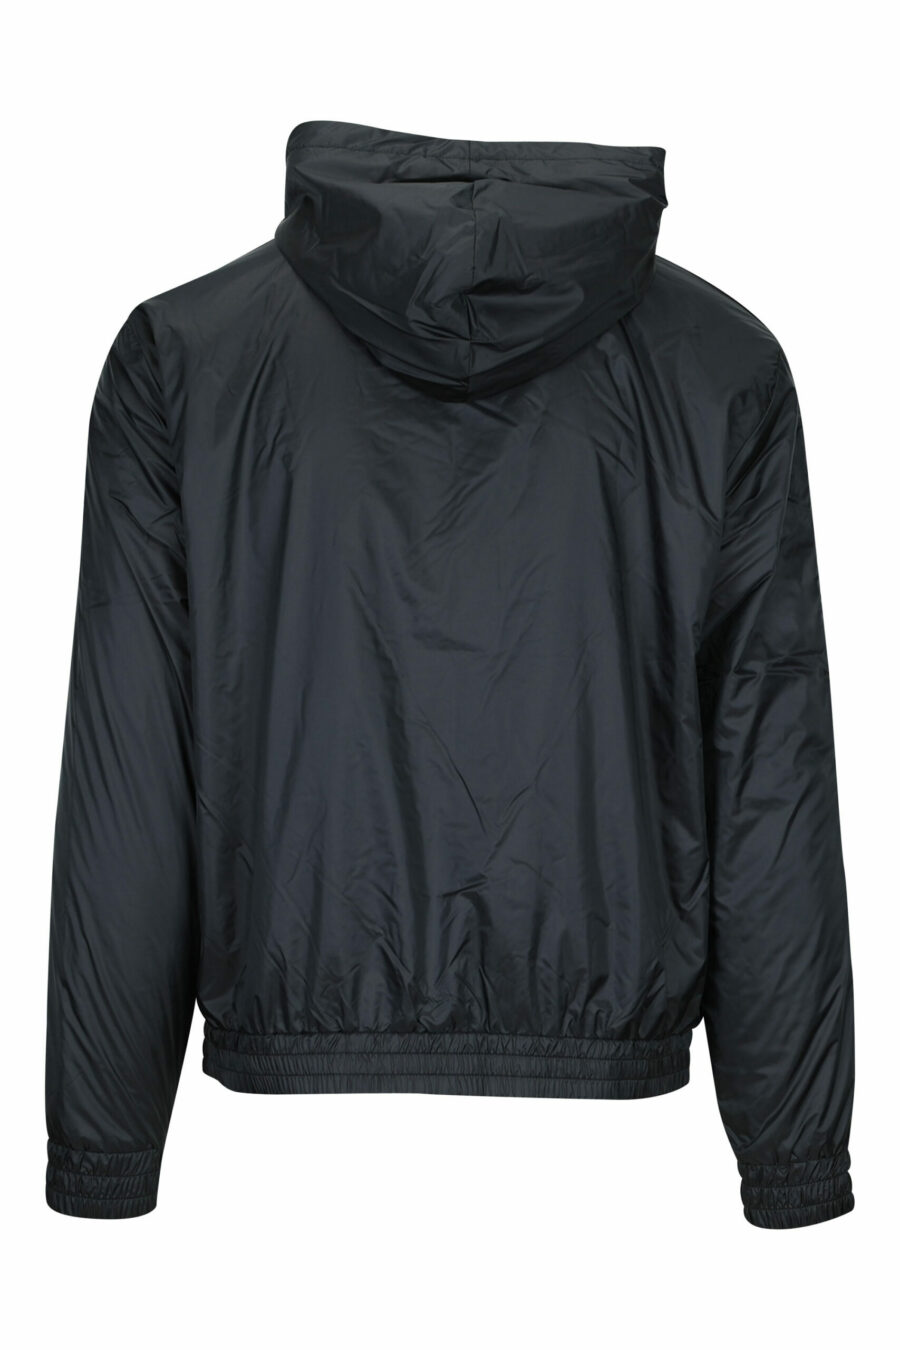 Schwarze wasserdichte Jacke mit Kapuze, weißen Seitenlinien und "lux identity" Logo - 8058947472567 1 skaliert